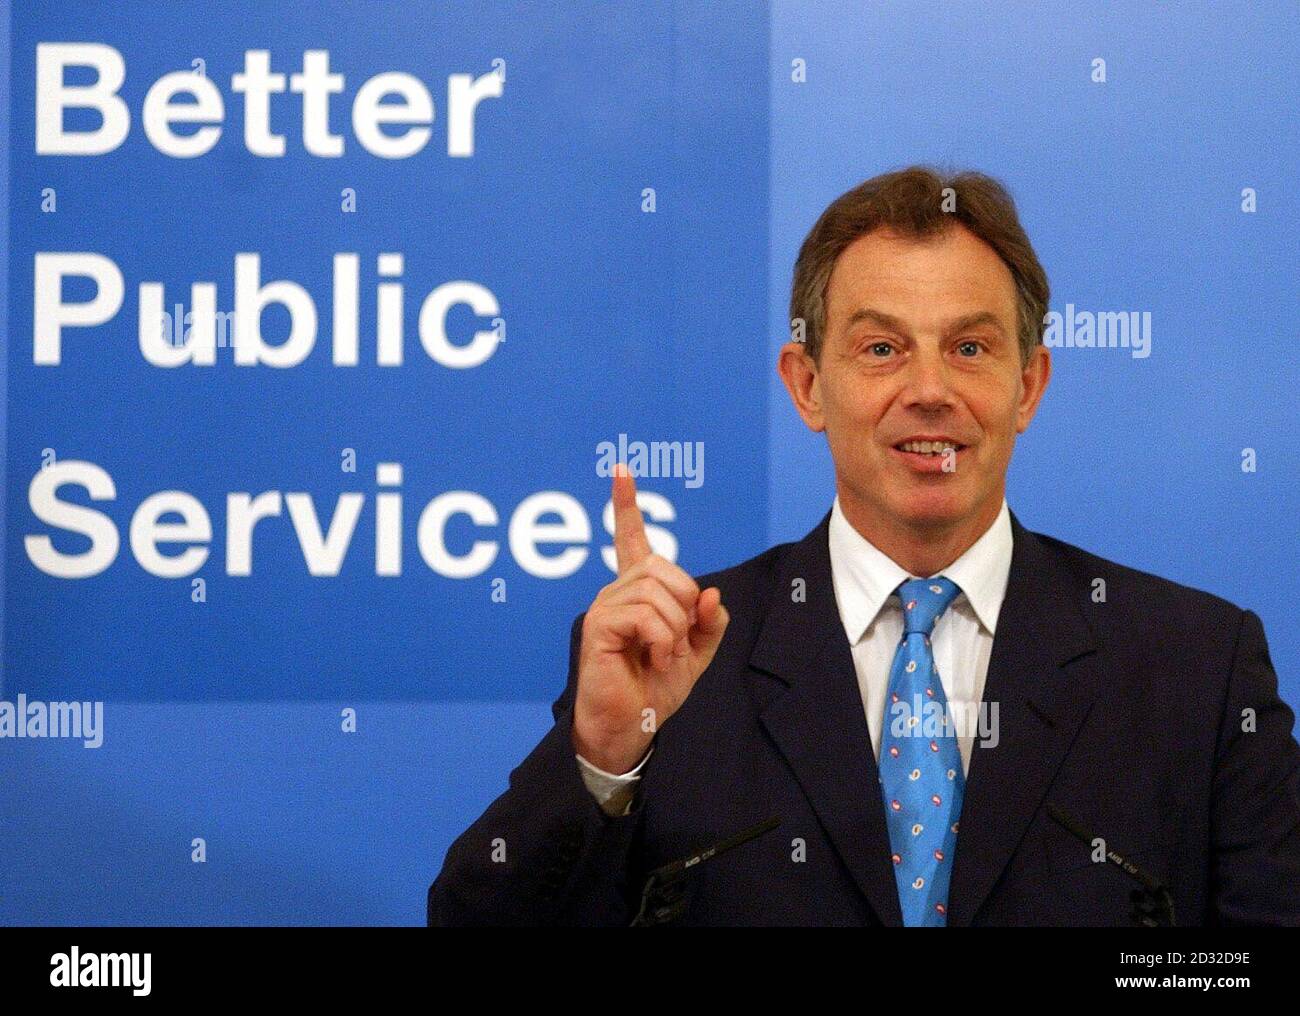 Le Premier ministre Tony Blair s'est exprimé lors du lancement d'une brochure sur les services publics à Downing Street, dans le centre de Londres. Banque D'Images